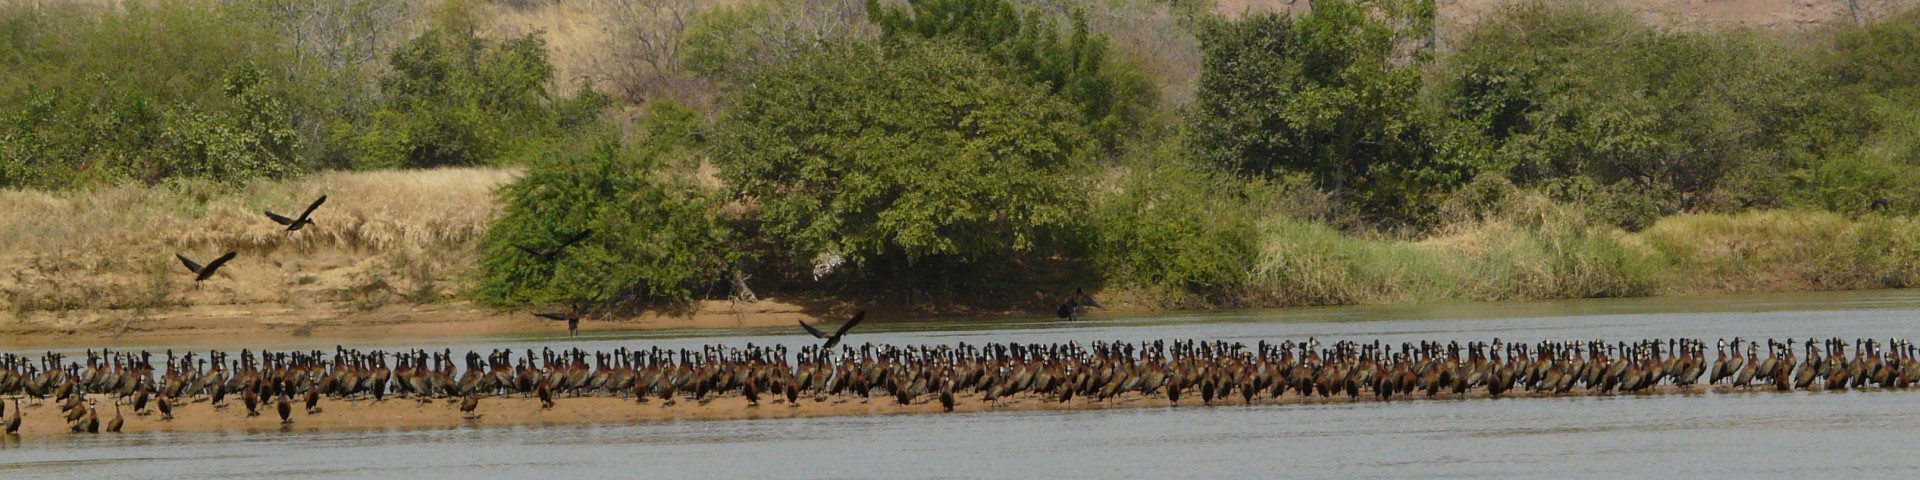 Eine große Anzahl an Vögeln steht am Ufer eines Wasserreservoirs.